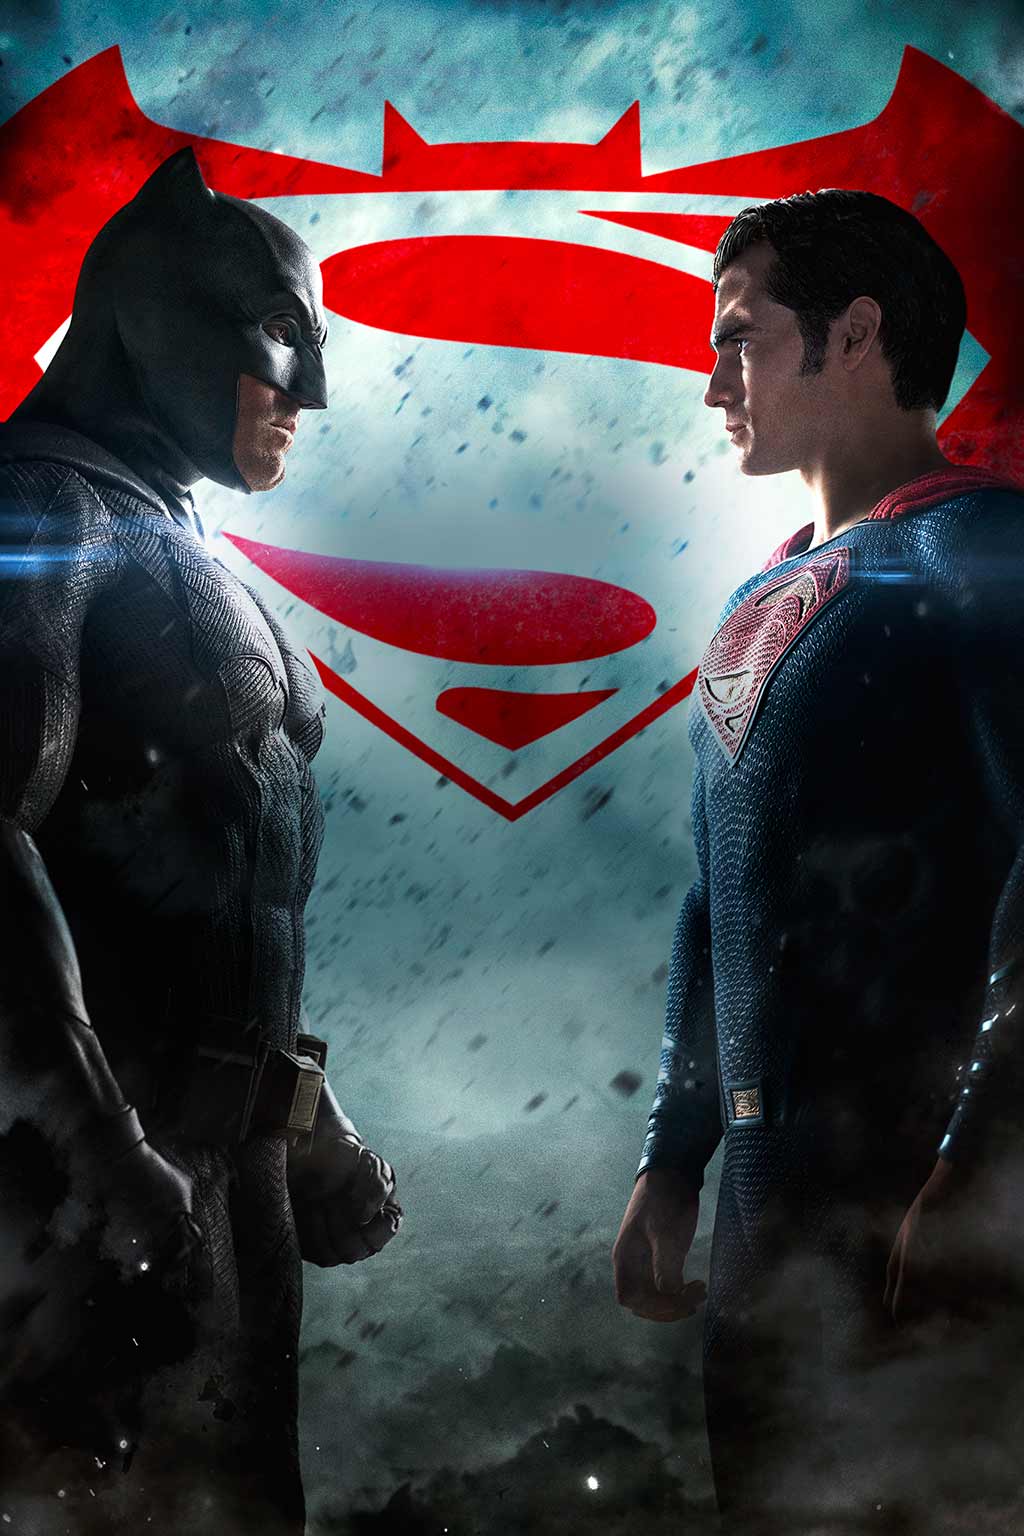 batman vs superman 2022